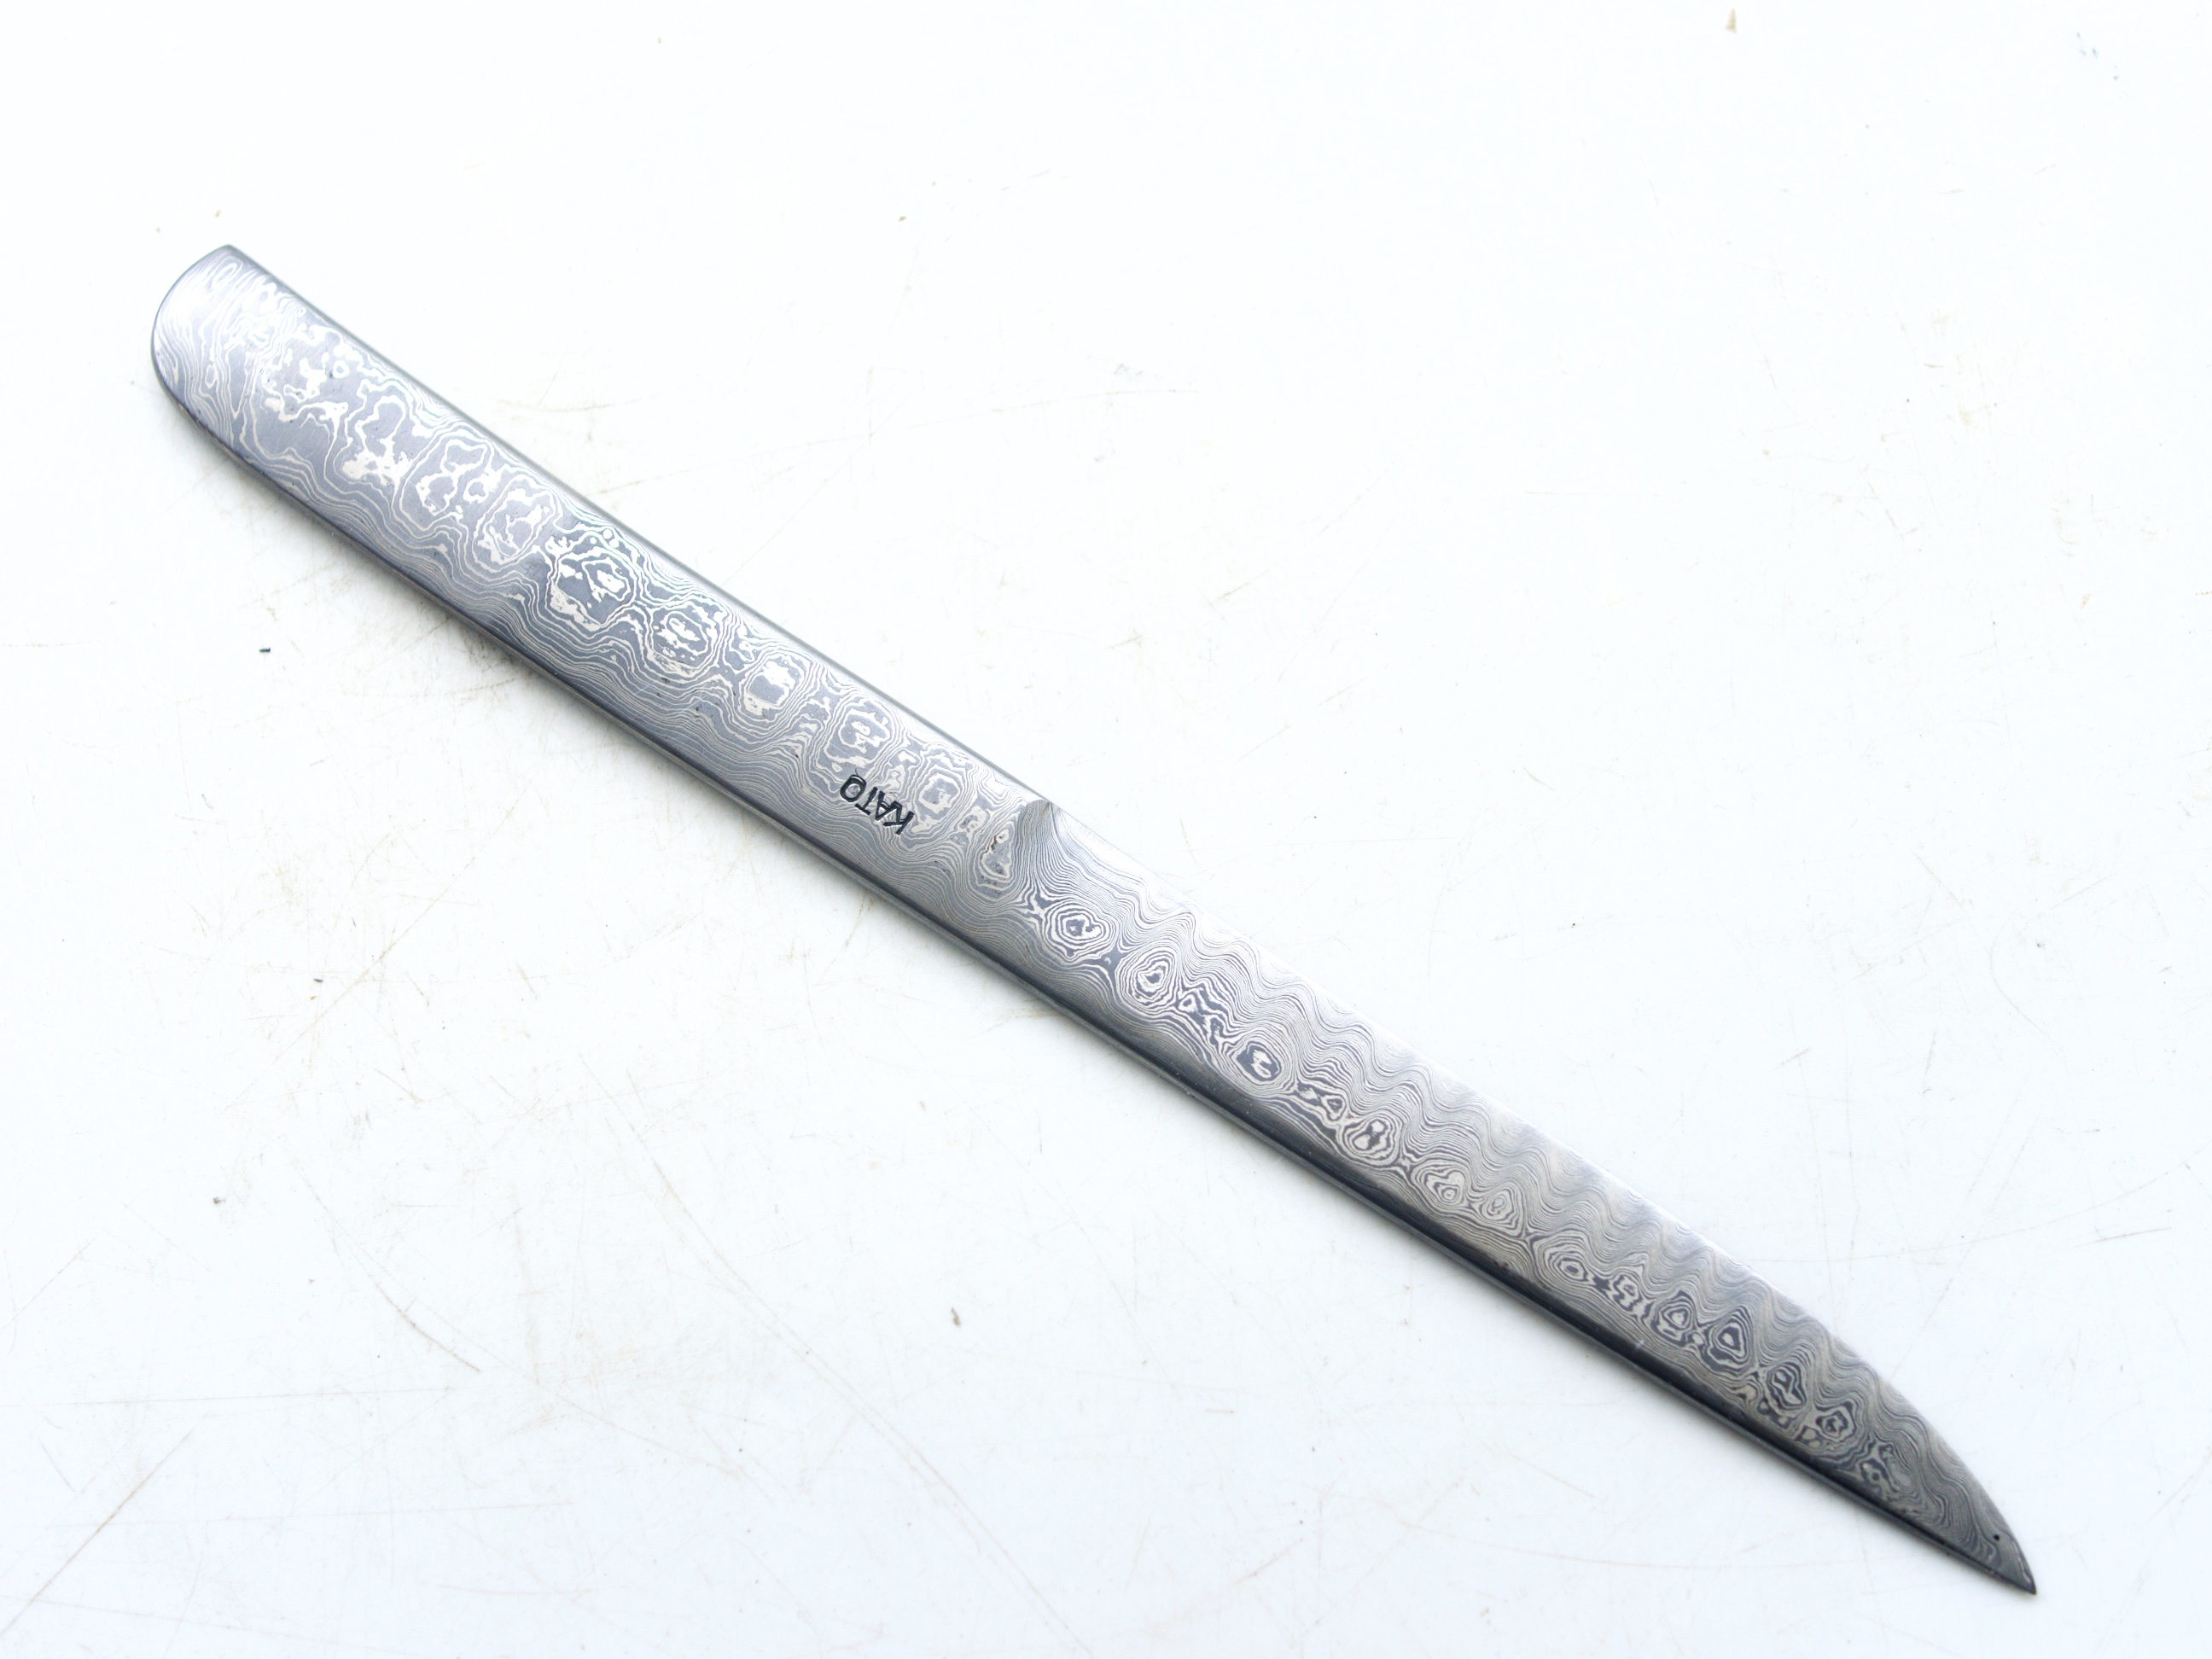 Kiyoshi Kato Damascus Utility or Paper Knife 150mm - Japanese Natural Stones